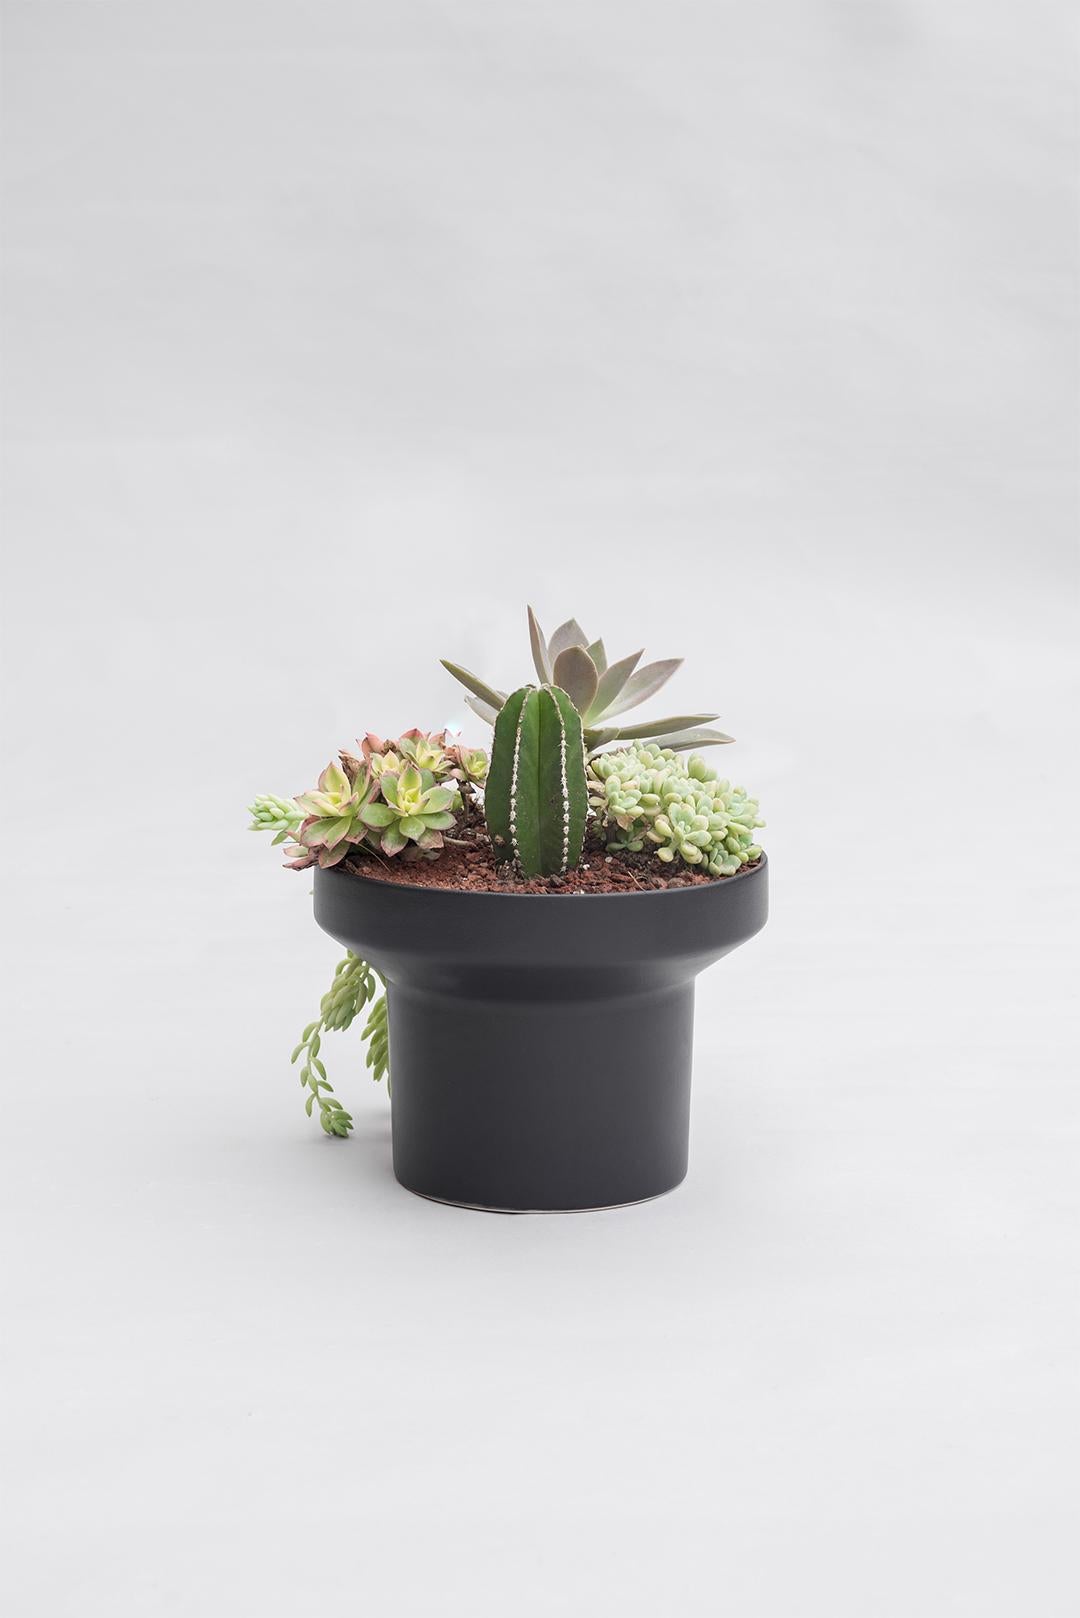 Trinum Medium Pedestal with Ceramic Planters, Contemporary Mexican Design 5